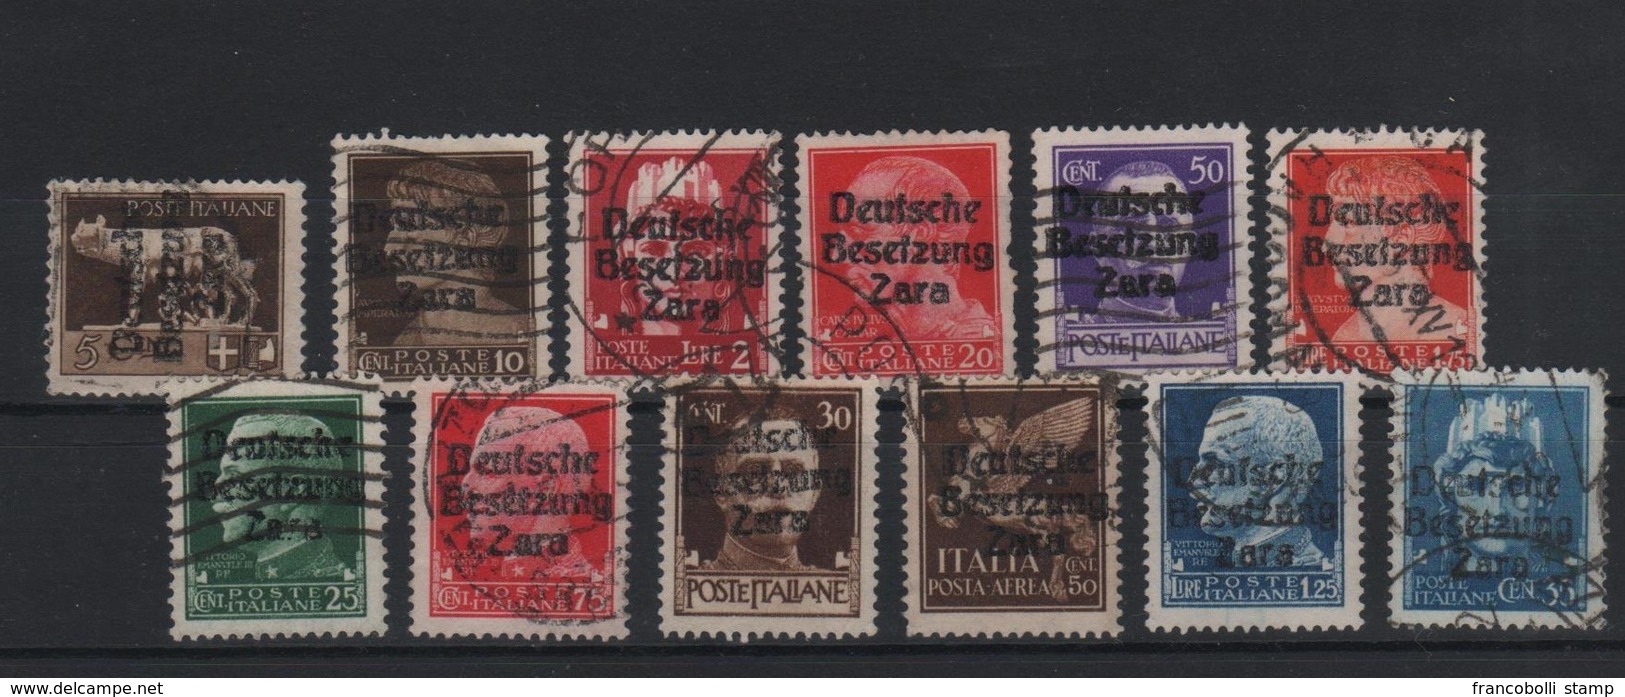 1943 Occupazione Tedesca Zara Lotto Usato - Occup. Tedesca: Zara